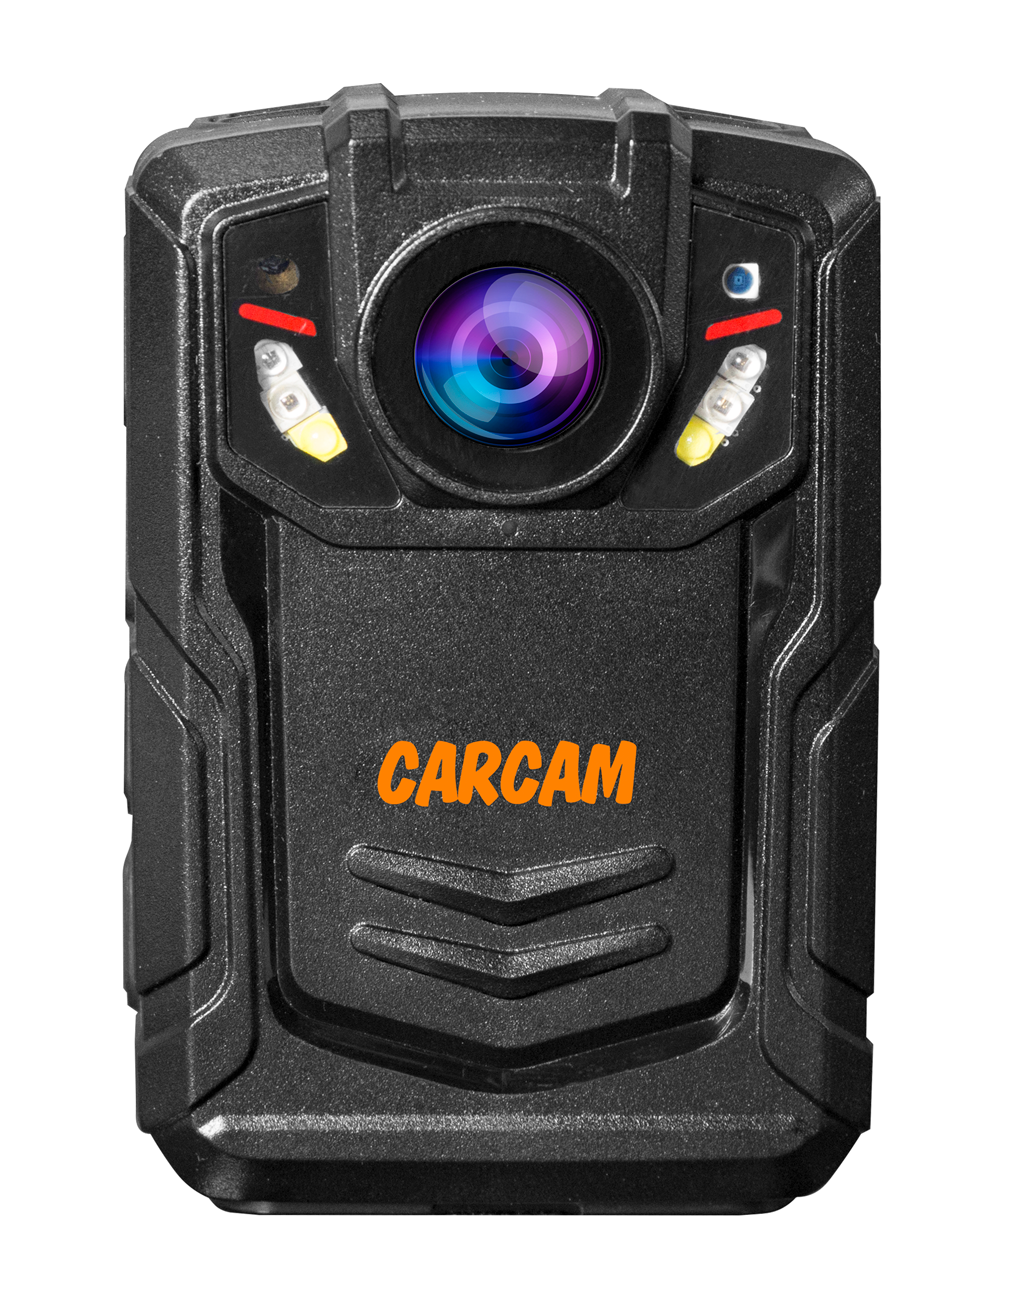 Персональный Quad HD видеорегистратор  CARCAM COMBAT 2S/4G 256Gb персональный видеорегистратор carcam combat 2s pro 32gb